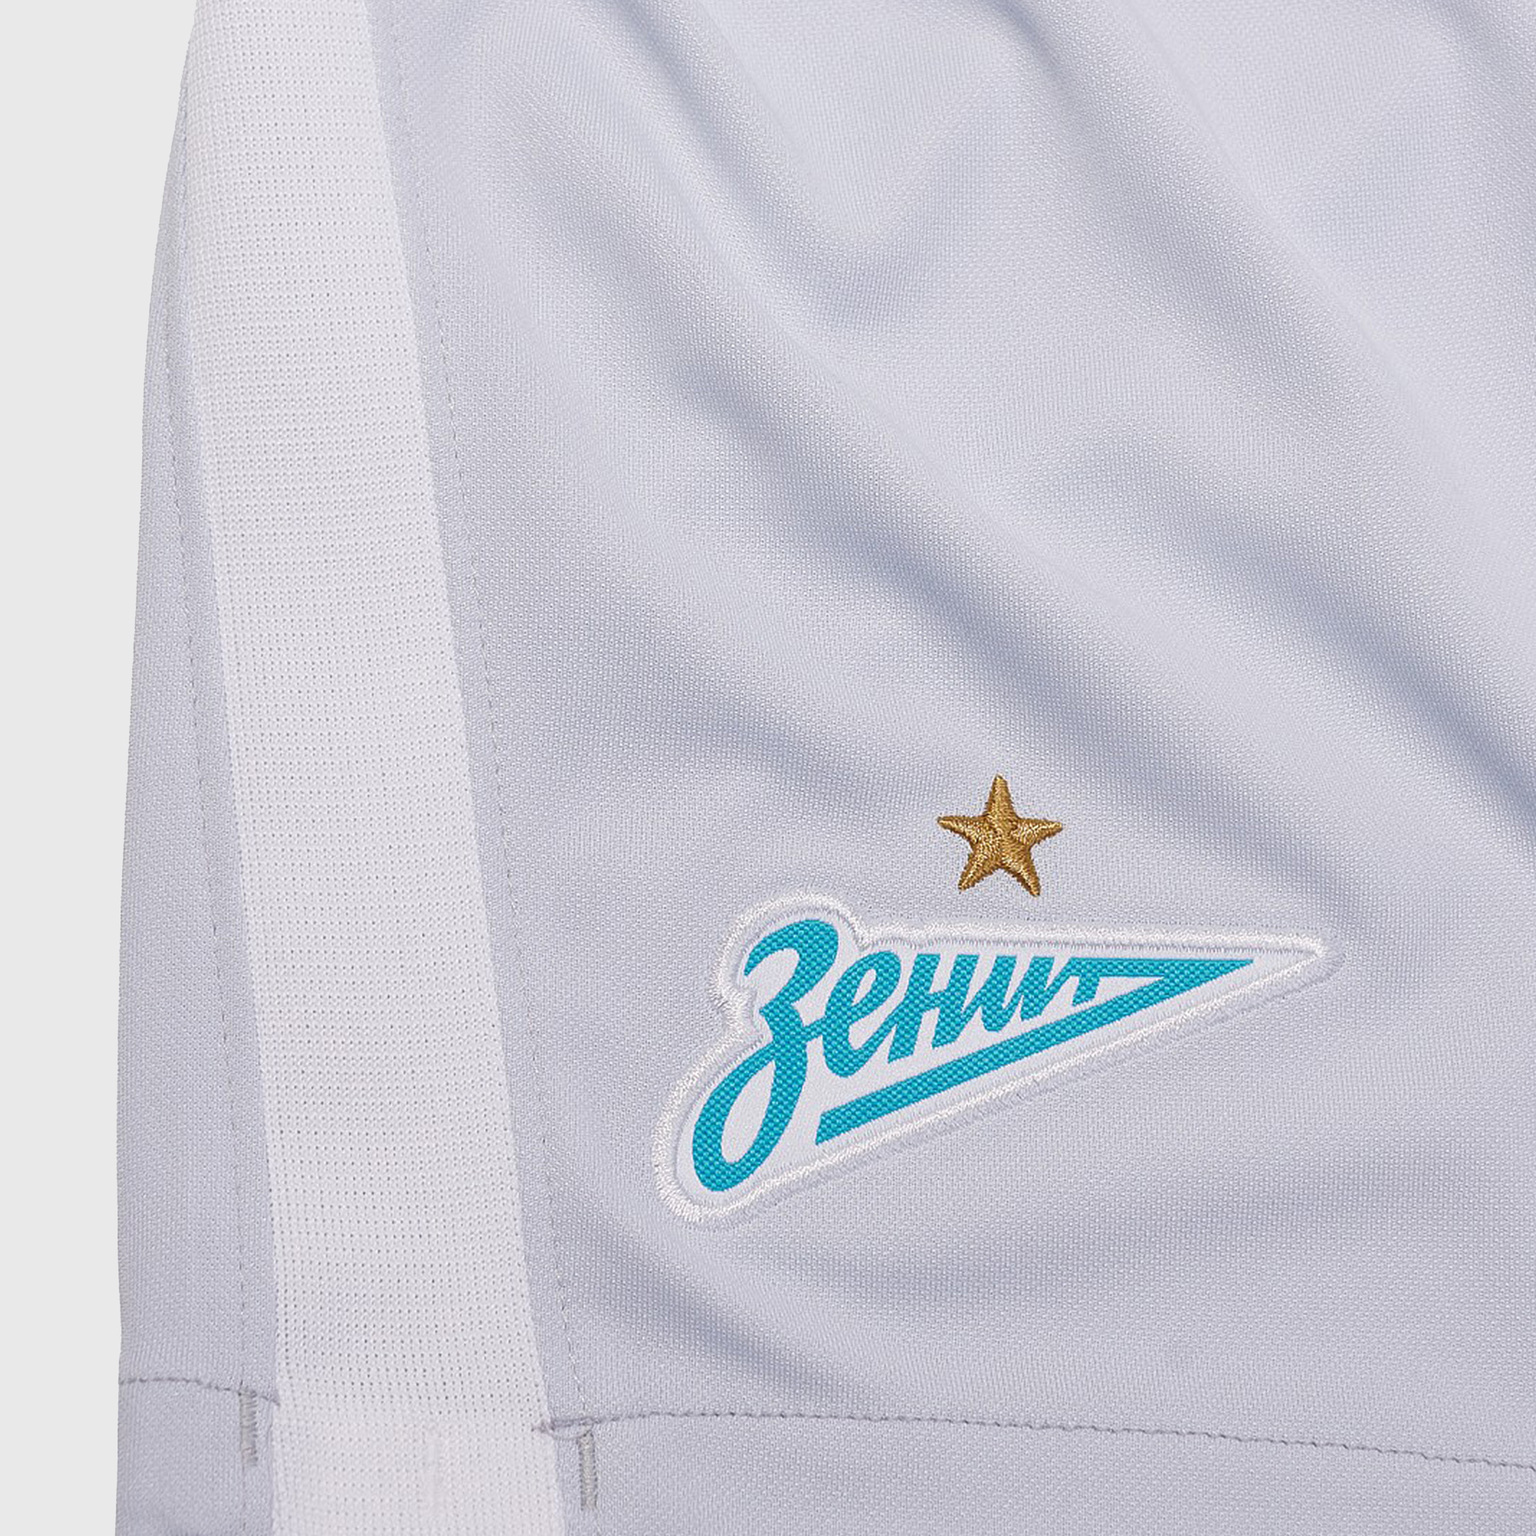 Шорты выездные подростковые Nike Zenit сезон 2020/21